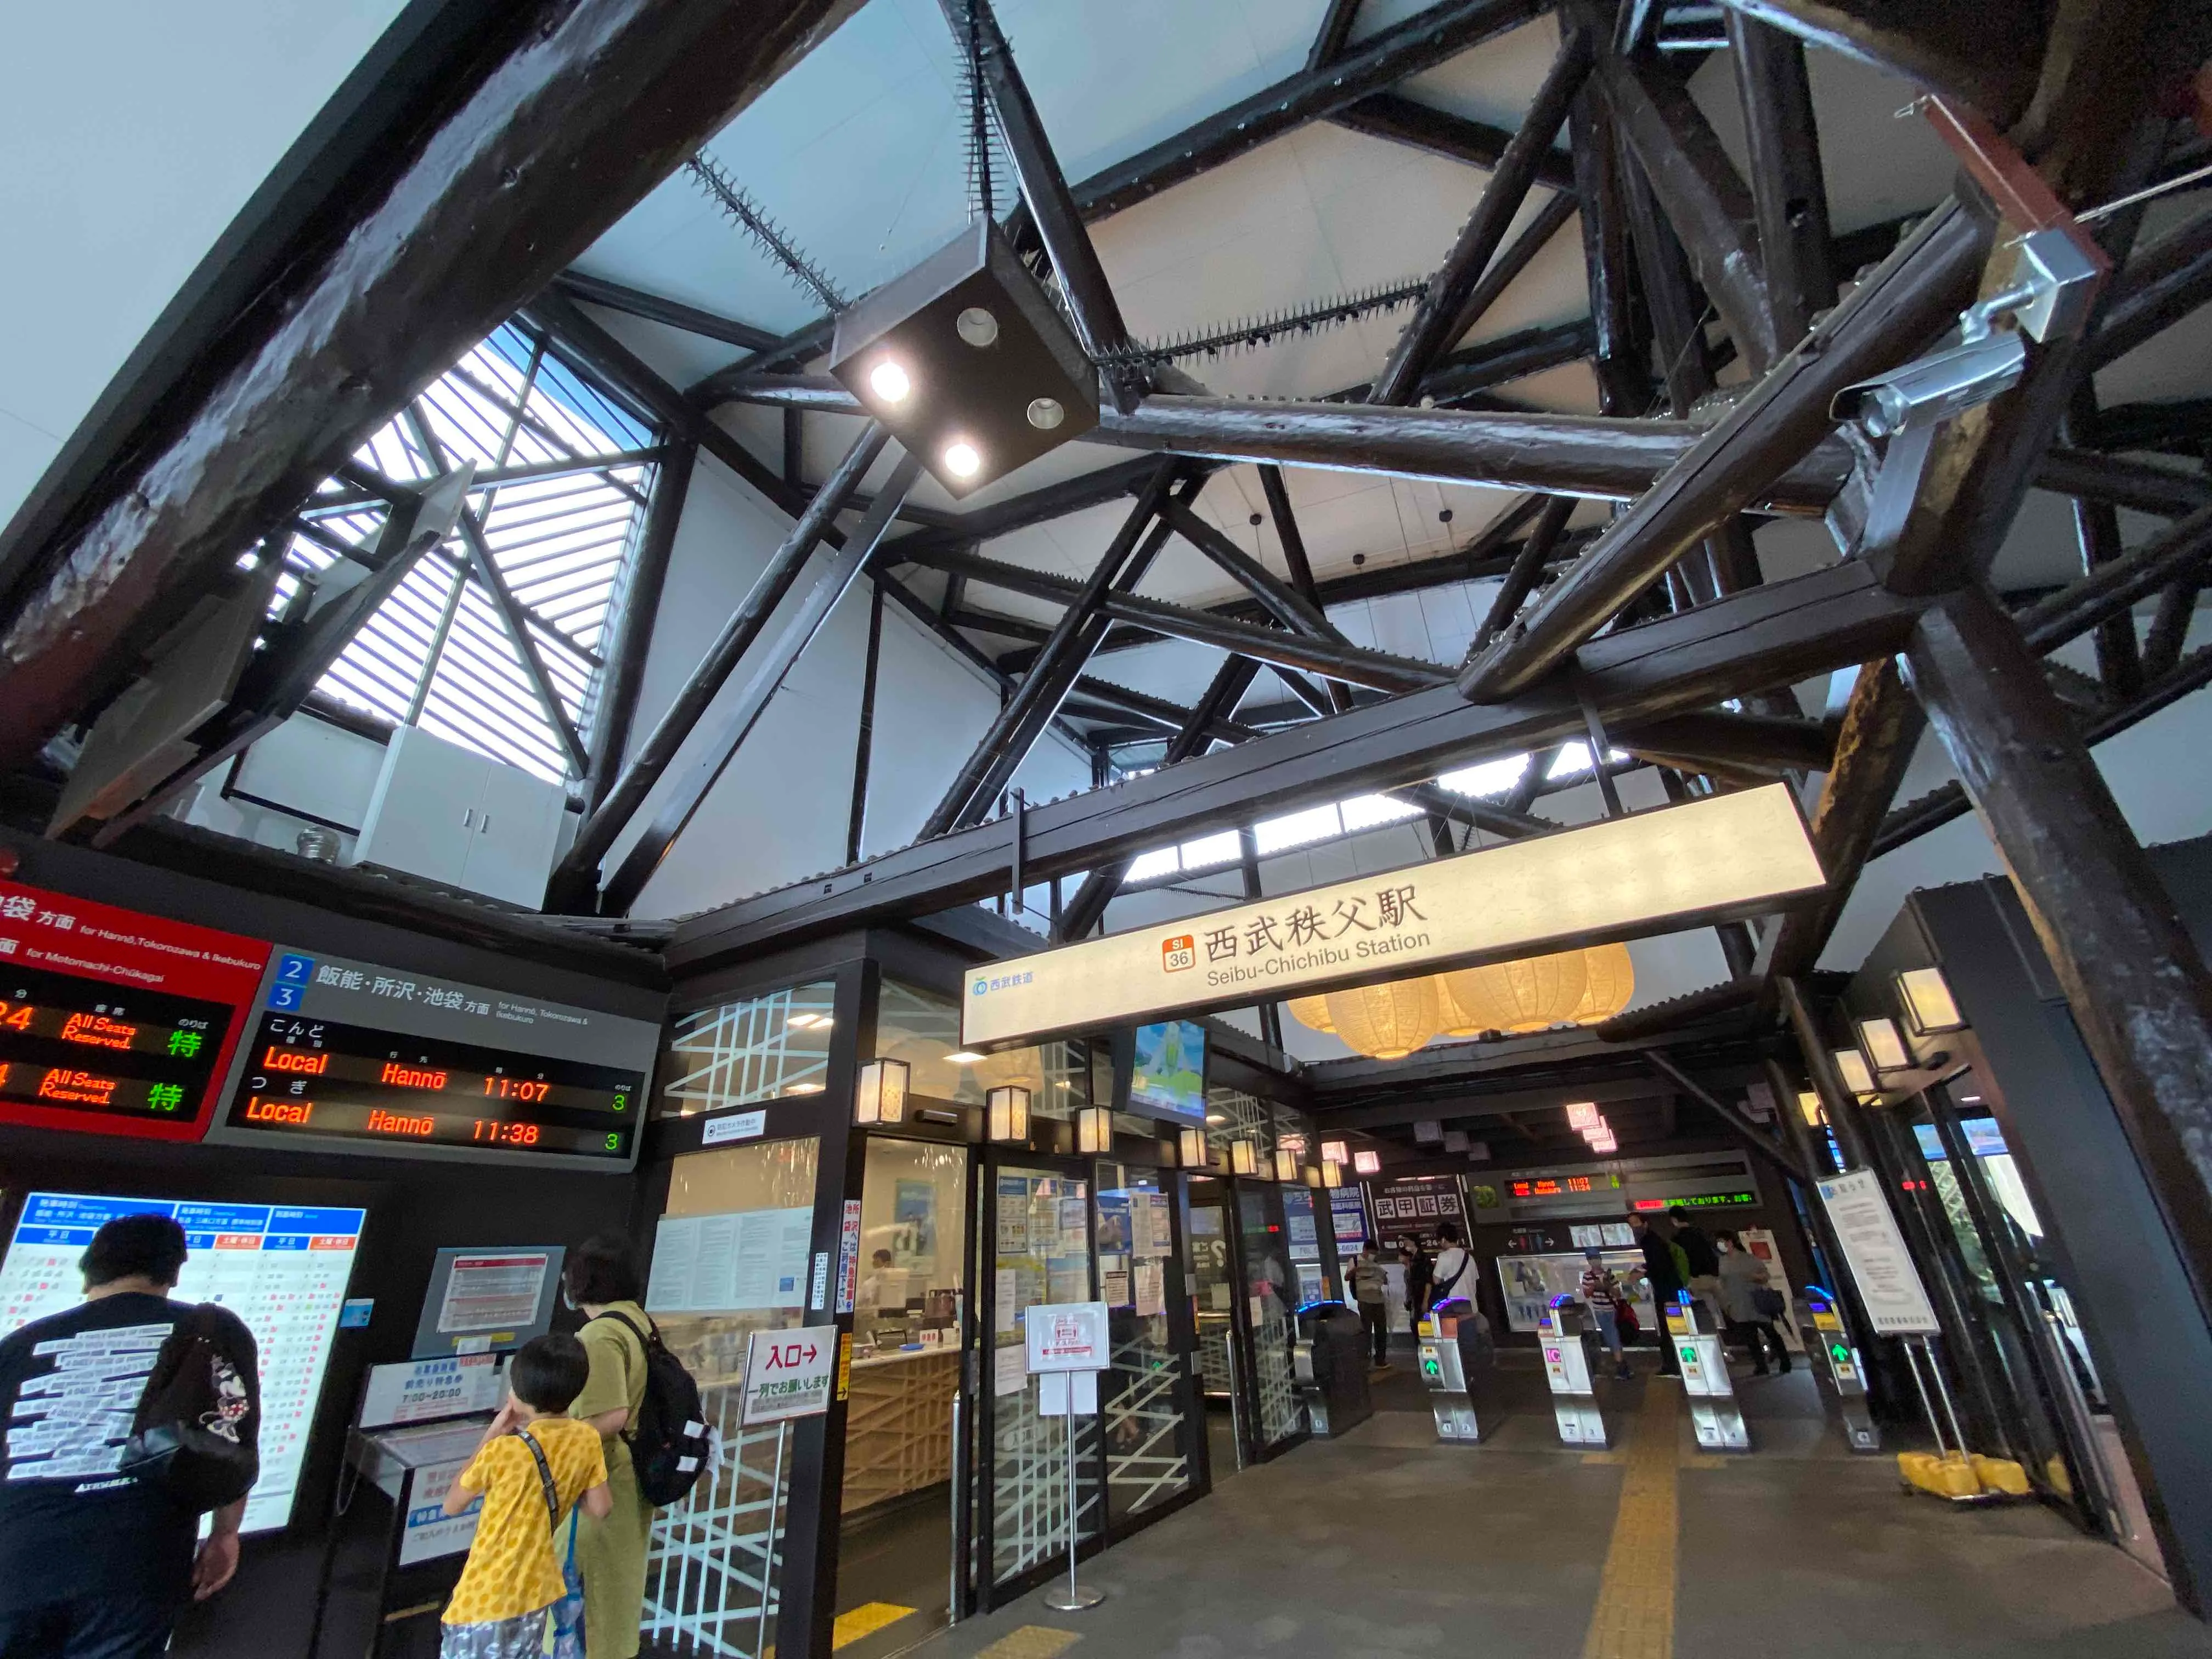 สถานีเซบุจิจิบุ